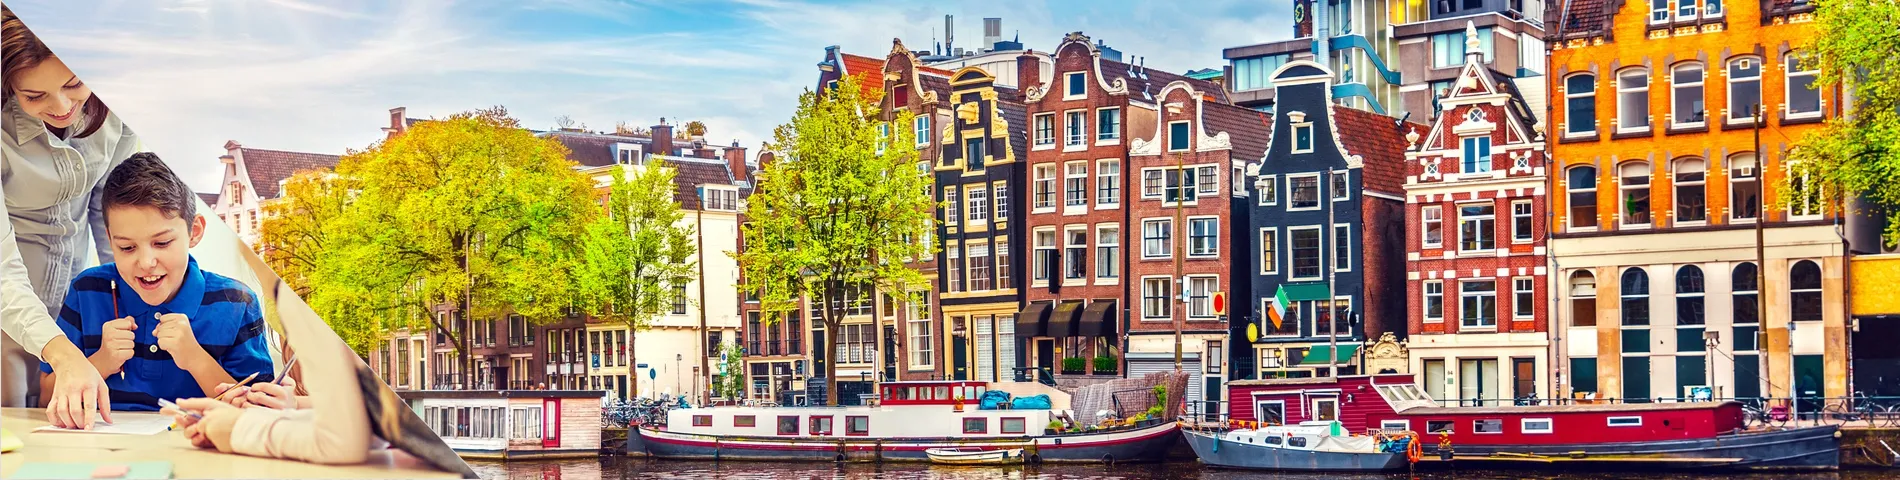 阿姆斯特丹 - 荷兰语教师培训